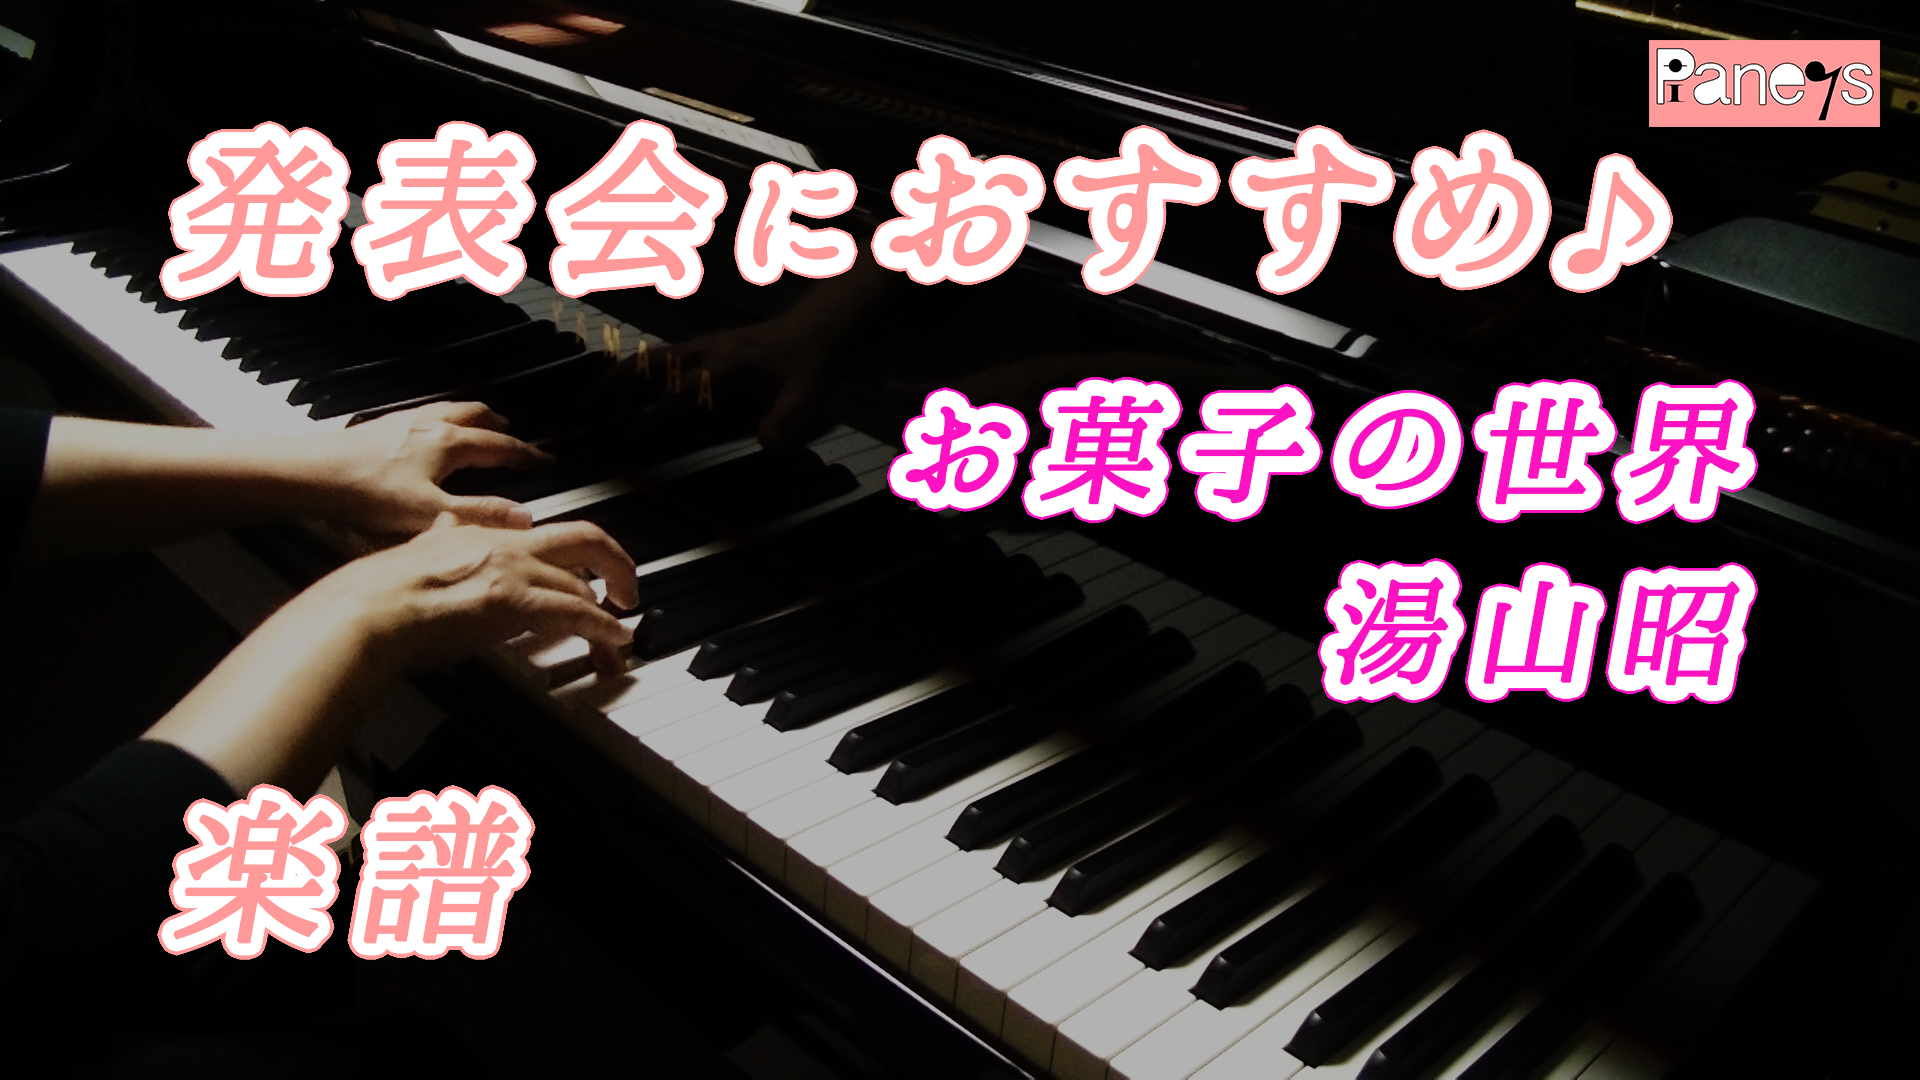 お菓子の世界 湯山昭 動画で選べる ピアノ発表会おすすめ曲